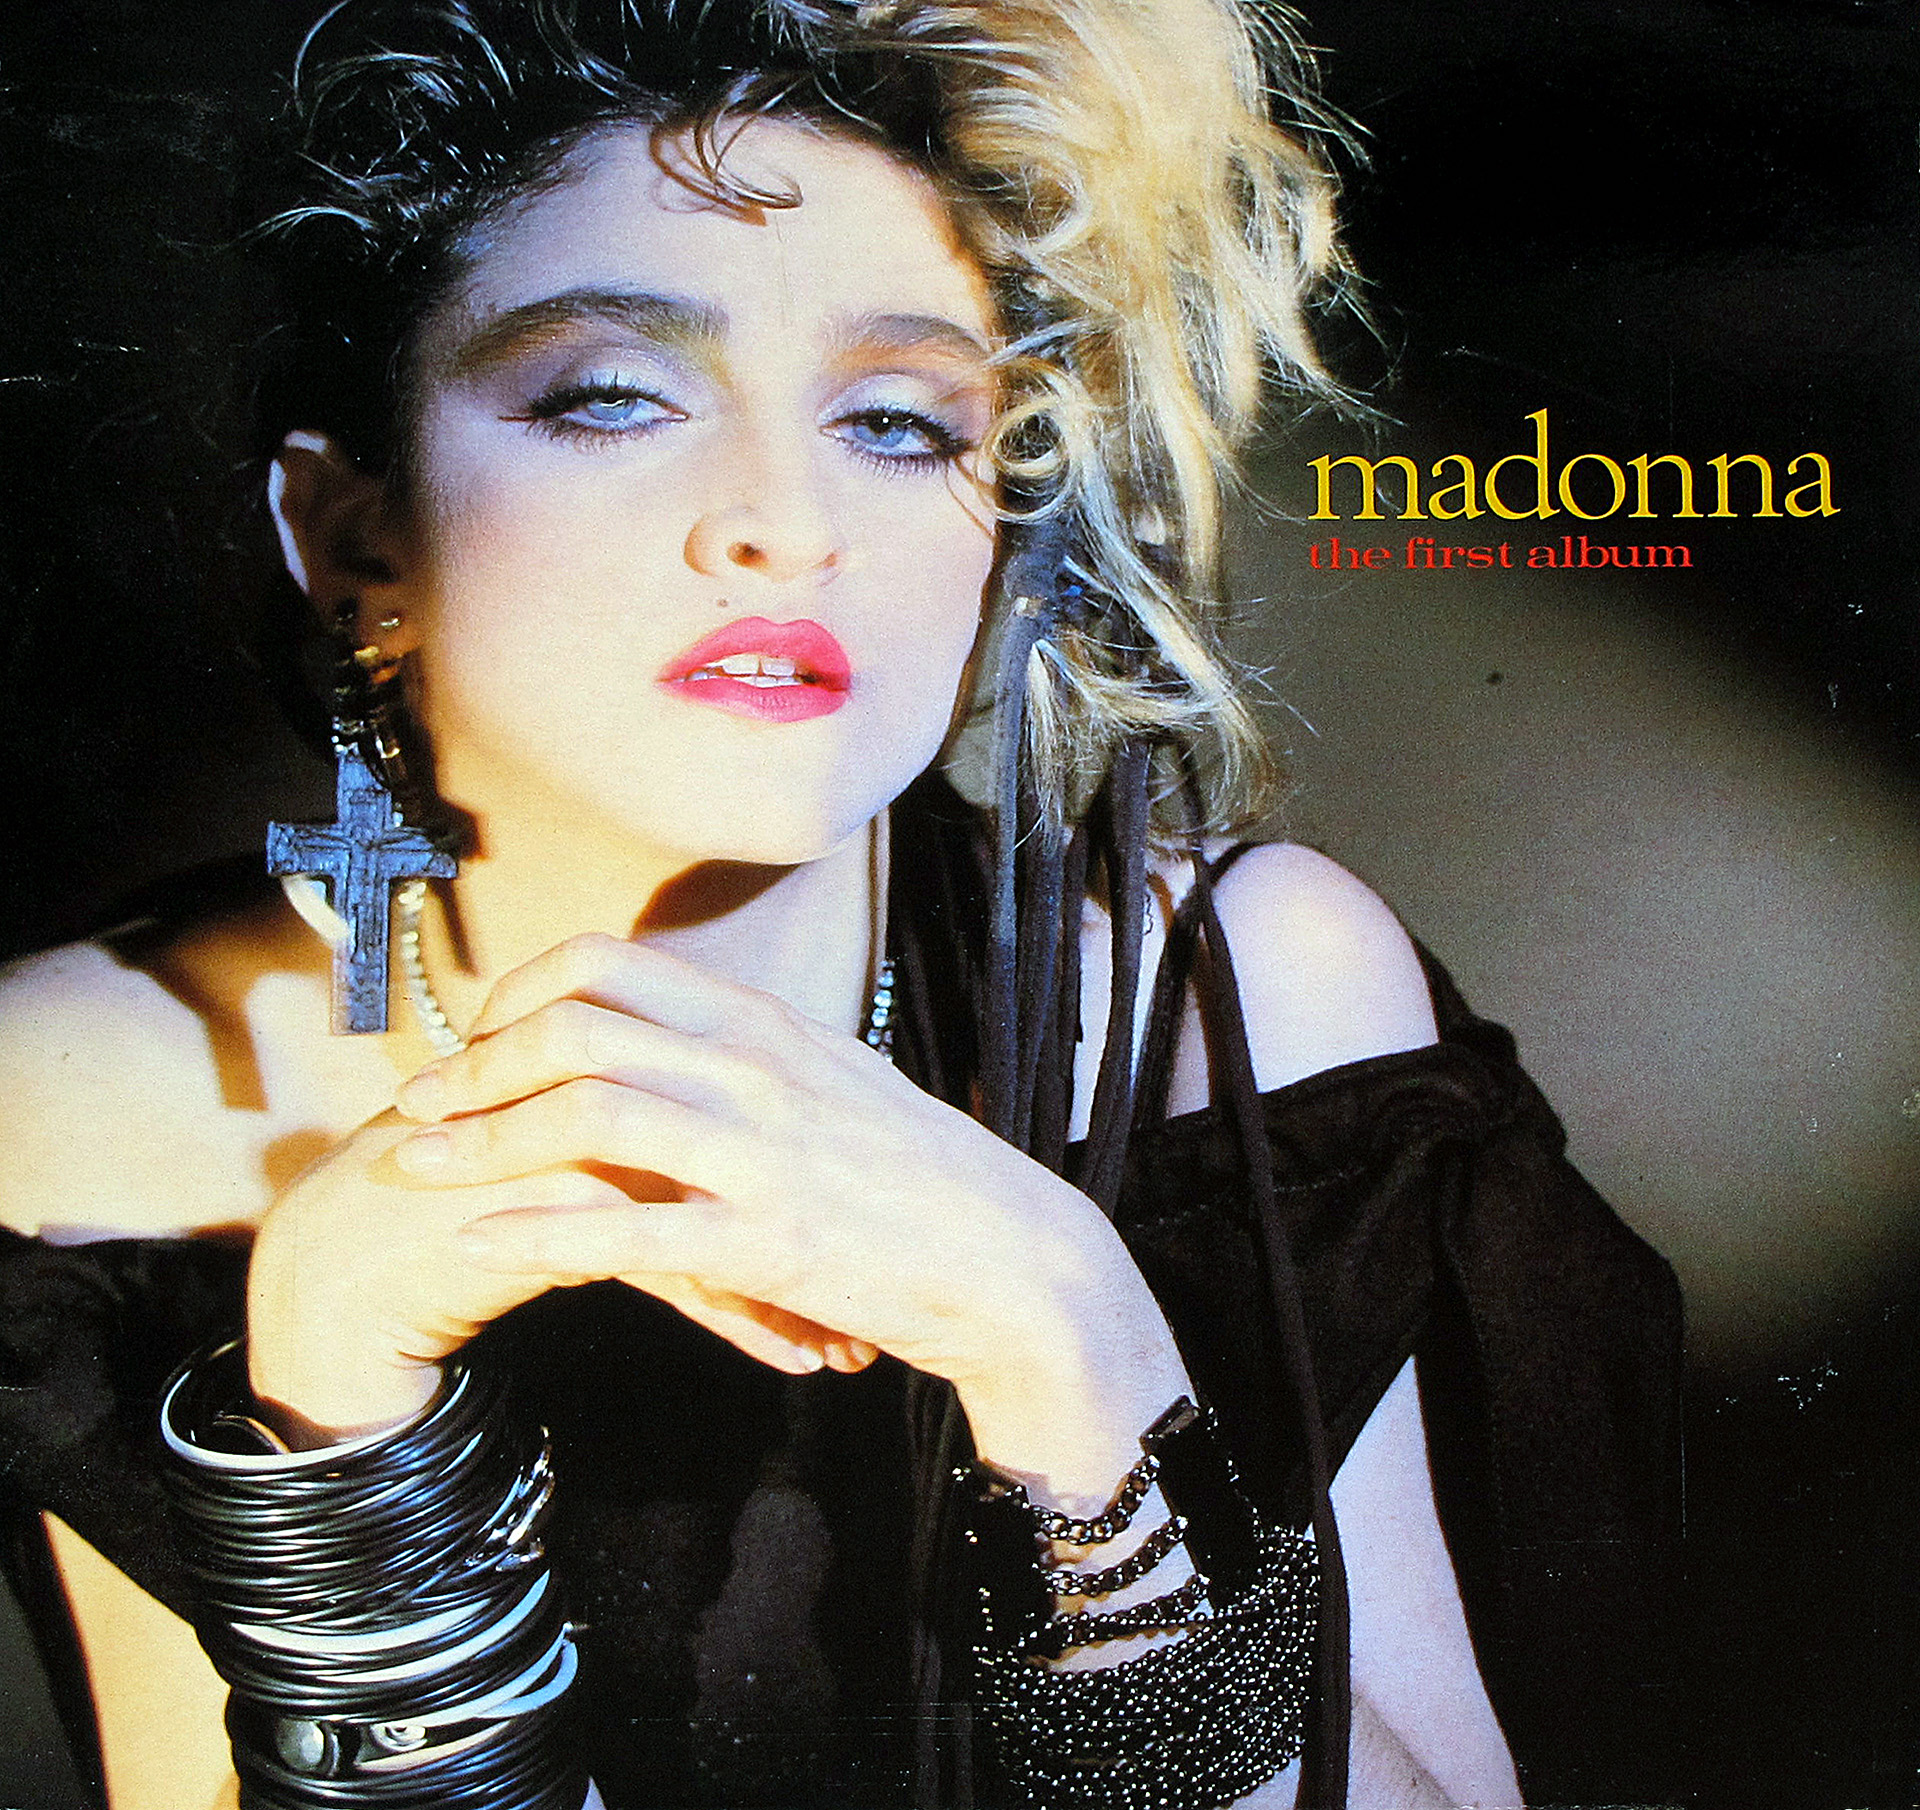 large album front cover photo of: MADONNA  THE FIRST ALBUM  Release 12"  Vinyl LP Album 